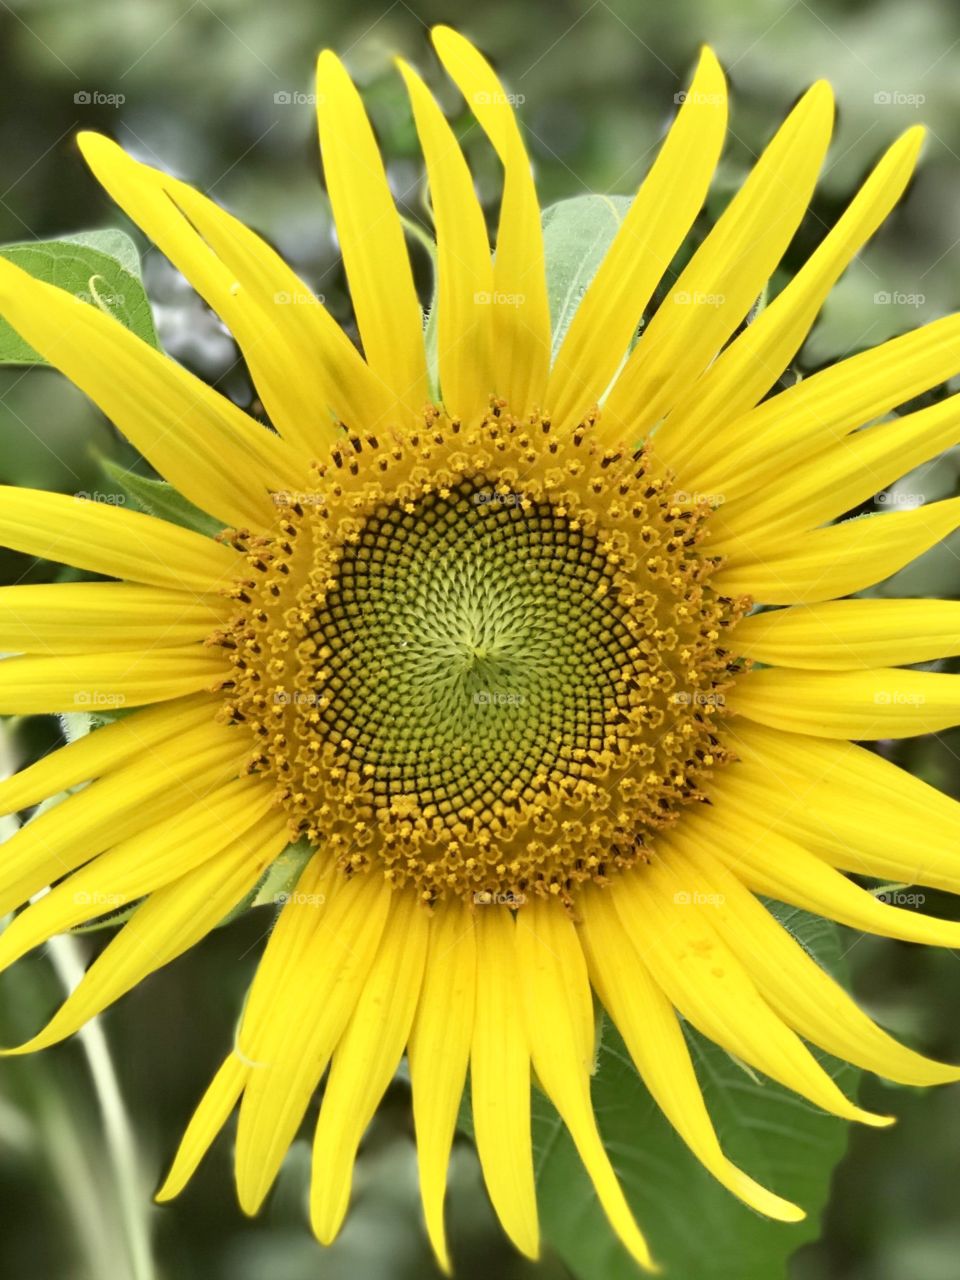 Happy Sunflowers 